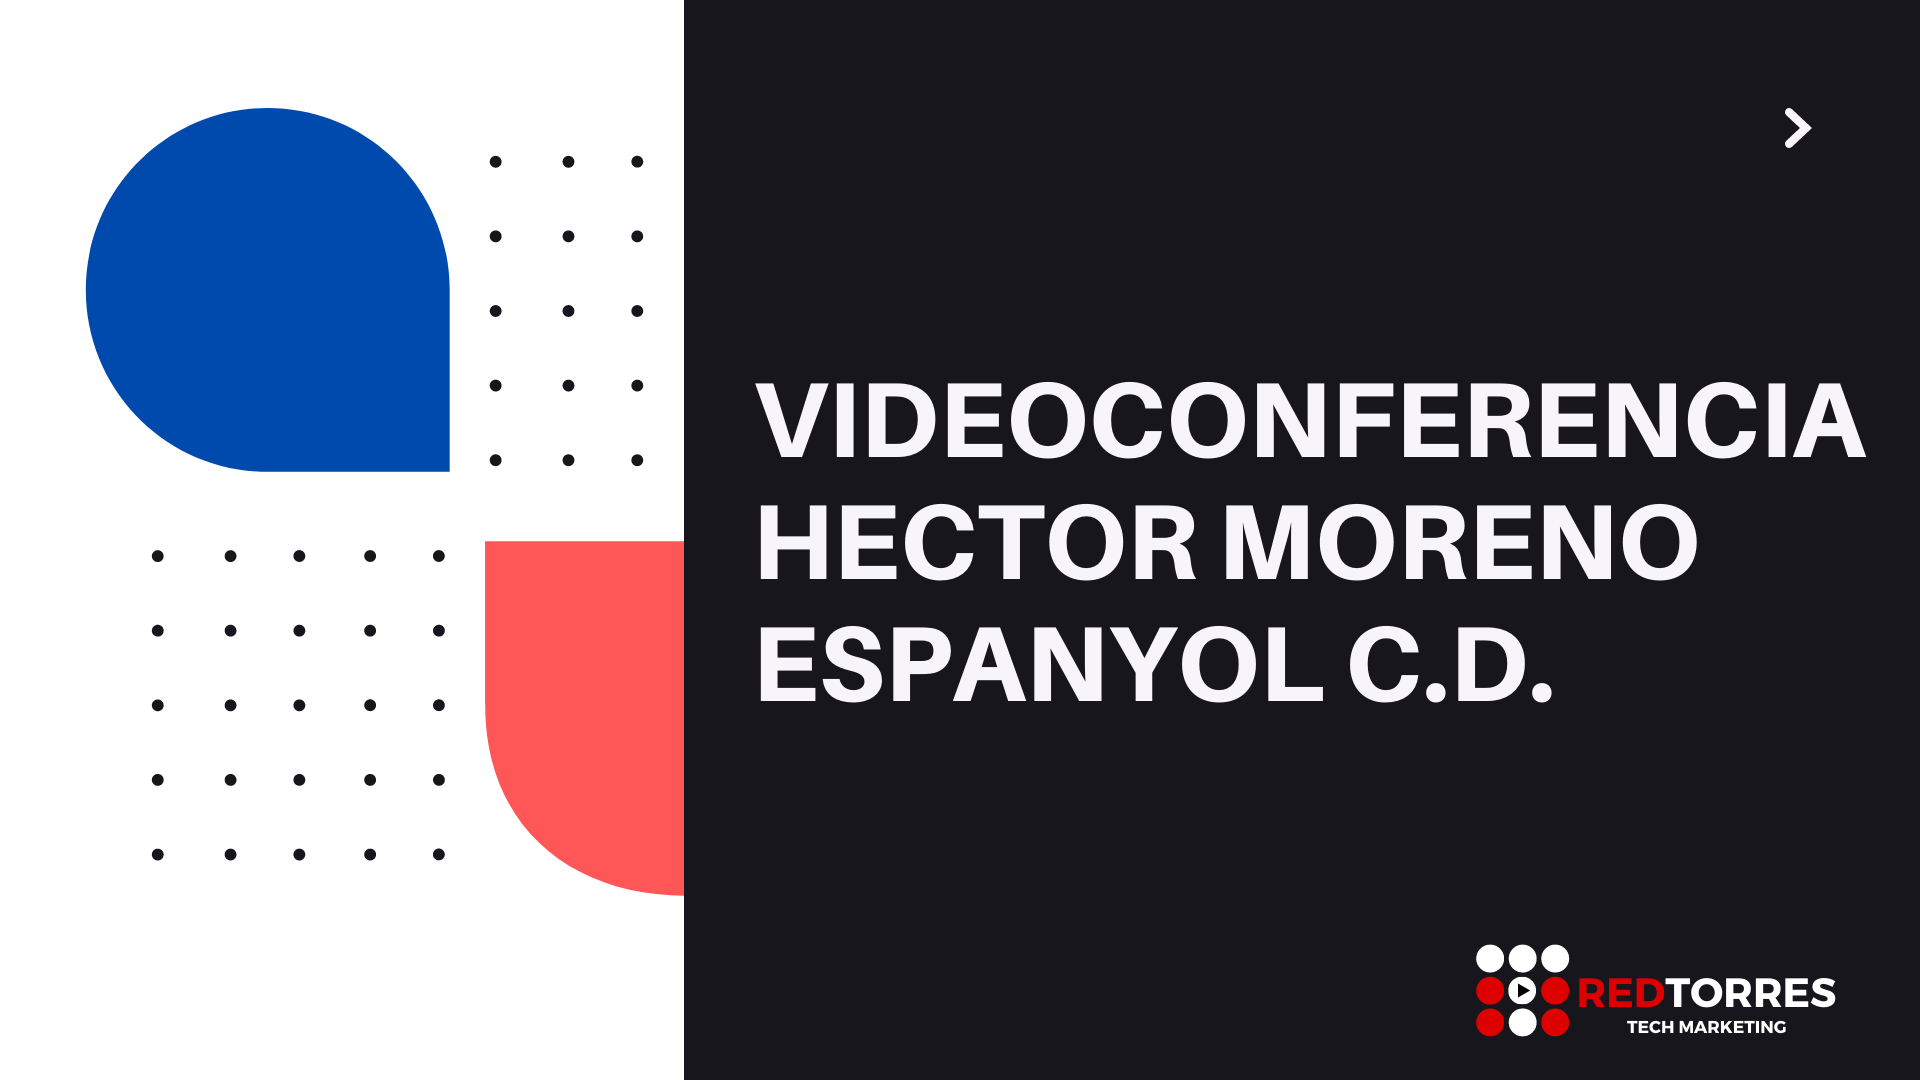 Hector Moreno jugador mexicano | Videoconferencia